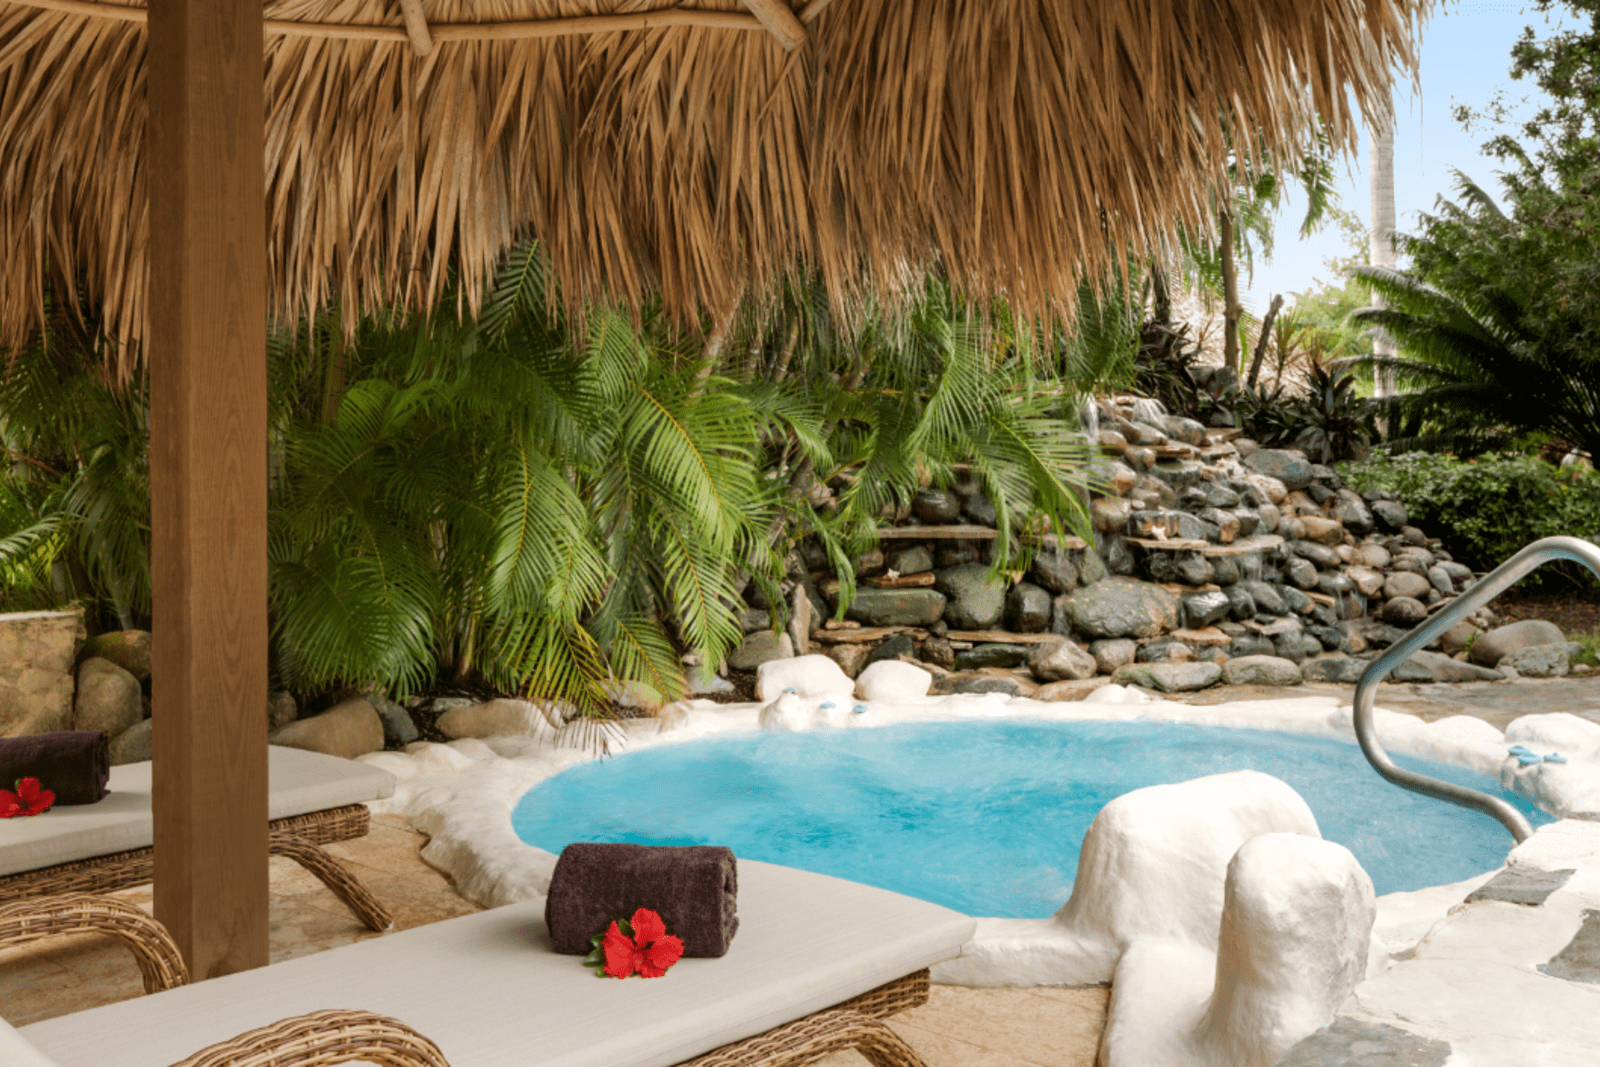 The spa at the Hilton La Romana resort